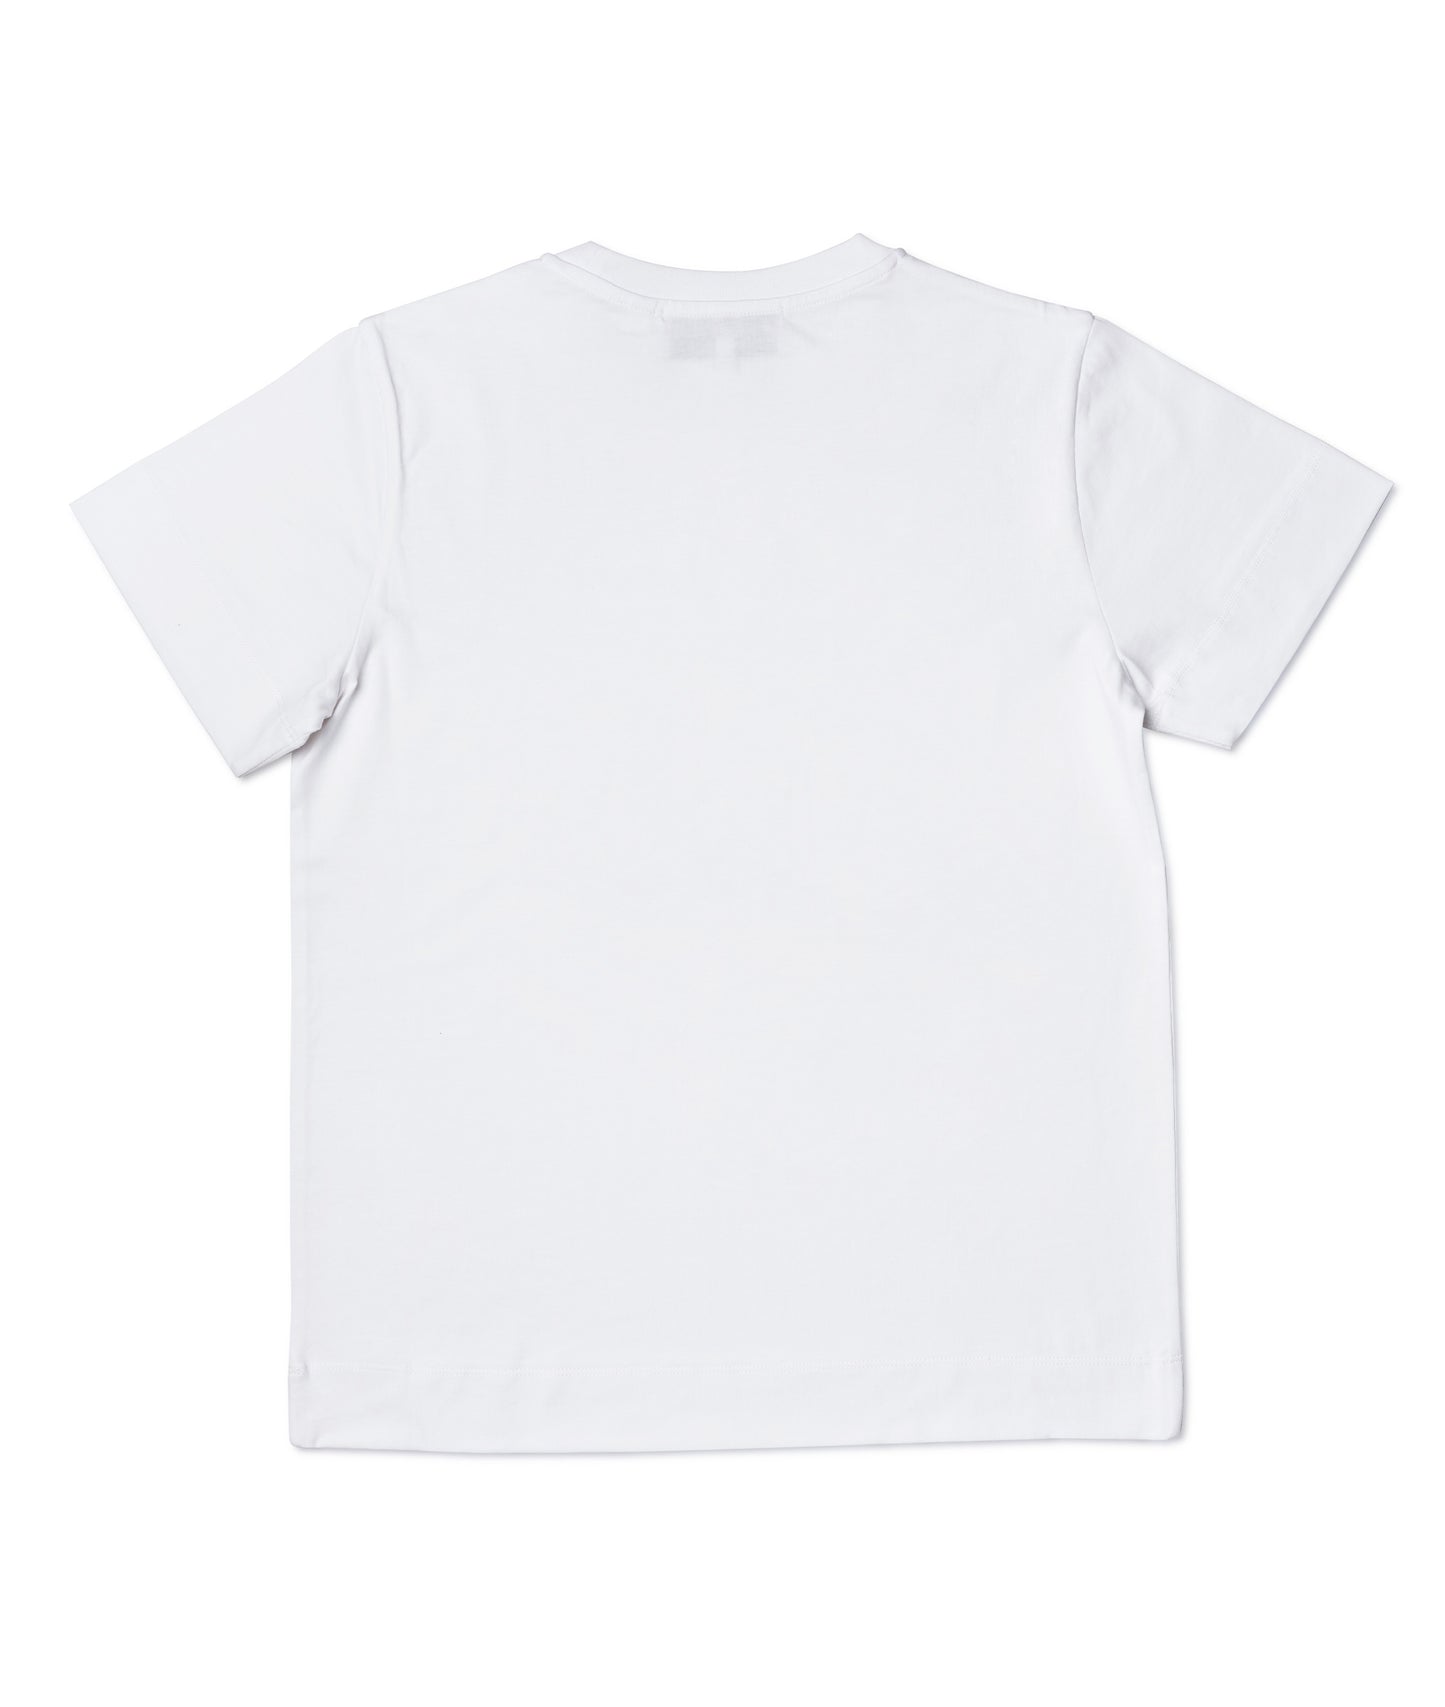 'Keep it Burning' White T-Shirt Women